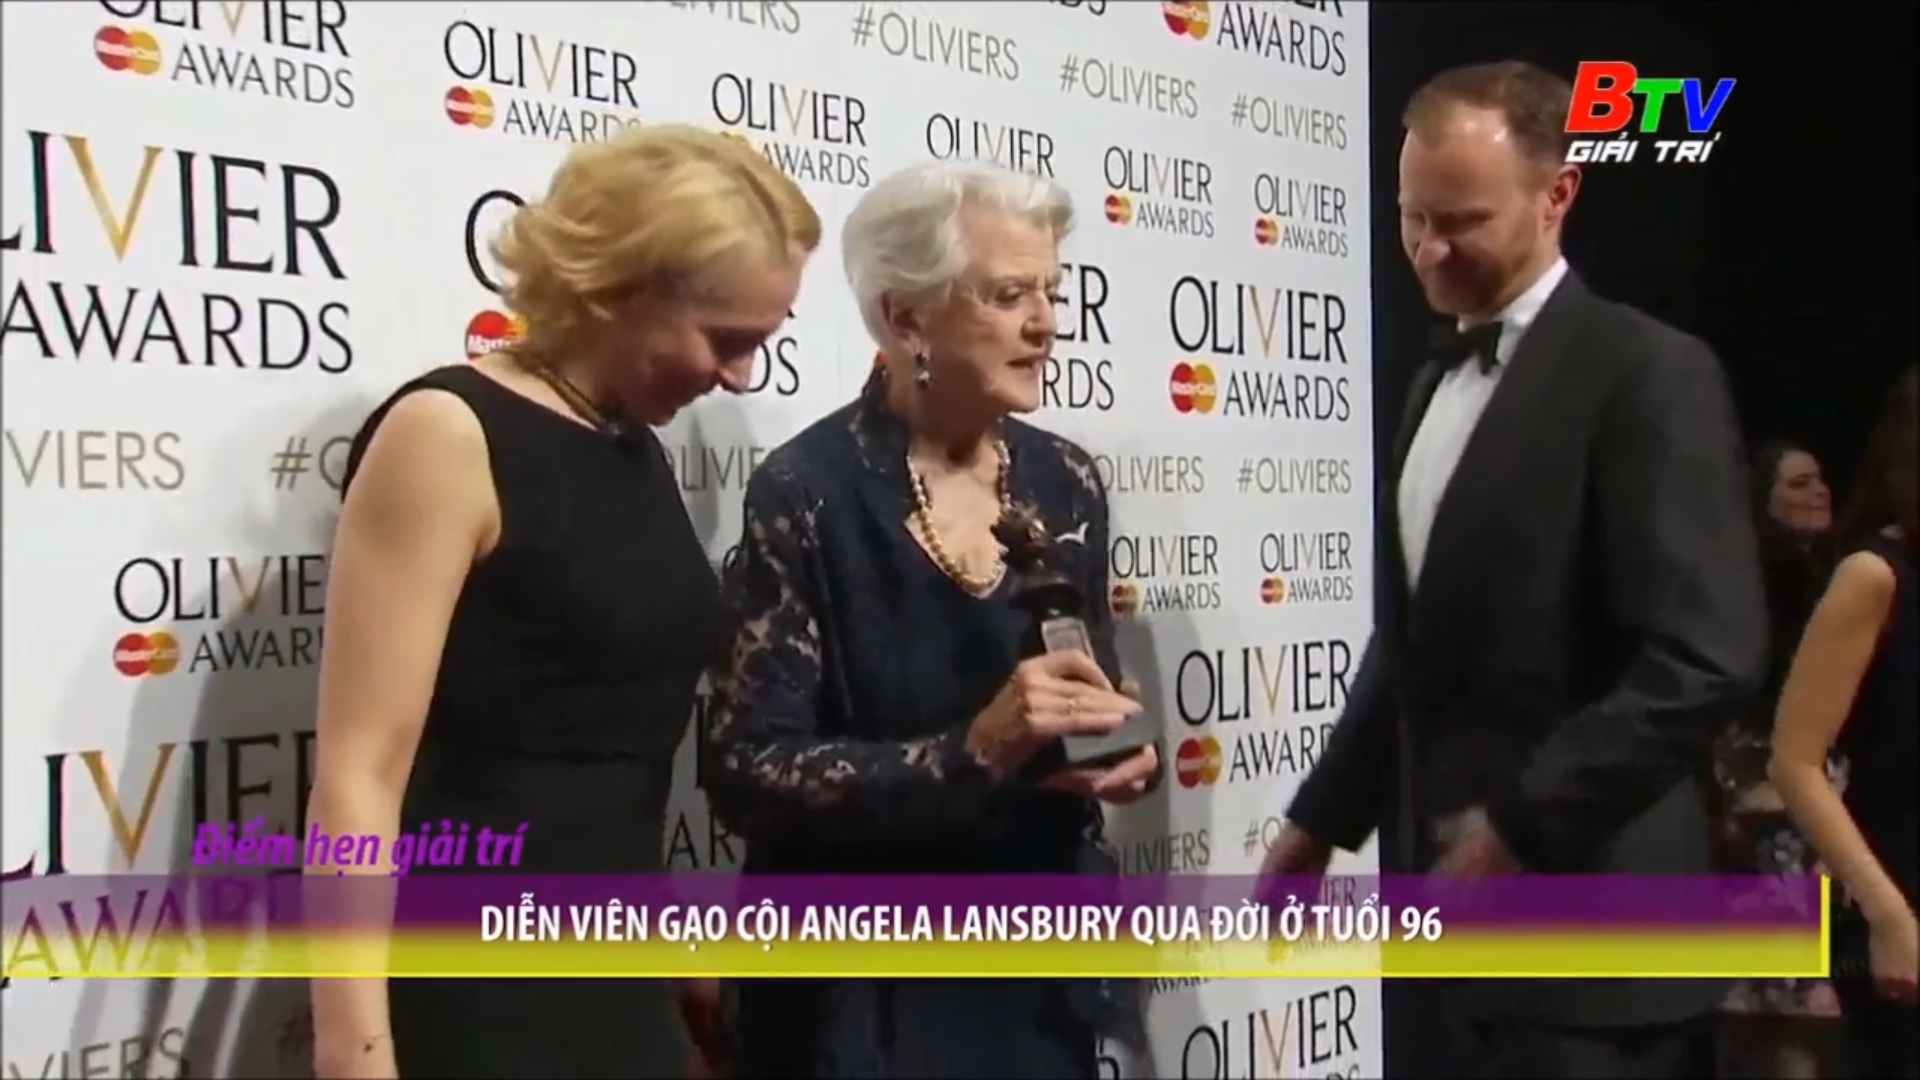 Diễn viên gạo cội Angela Lansbury qua đời ở tuổi 96